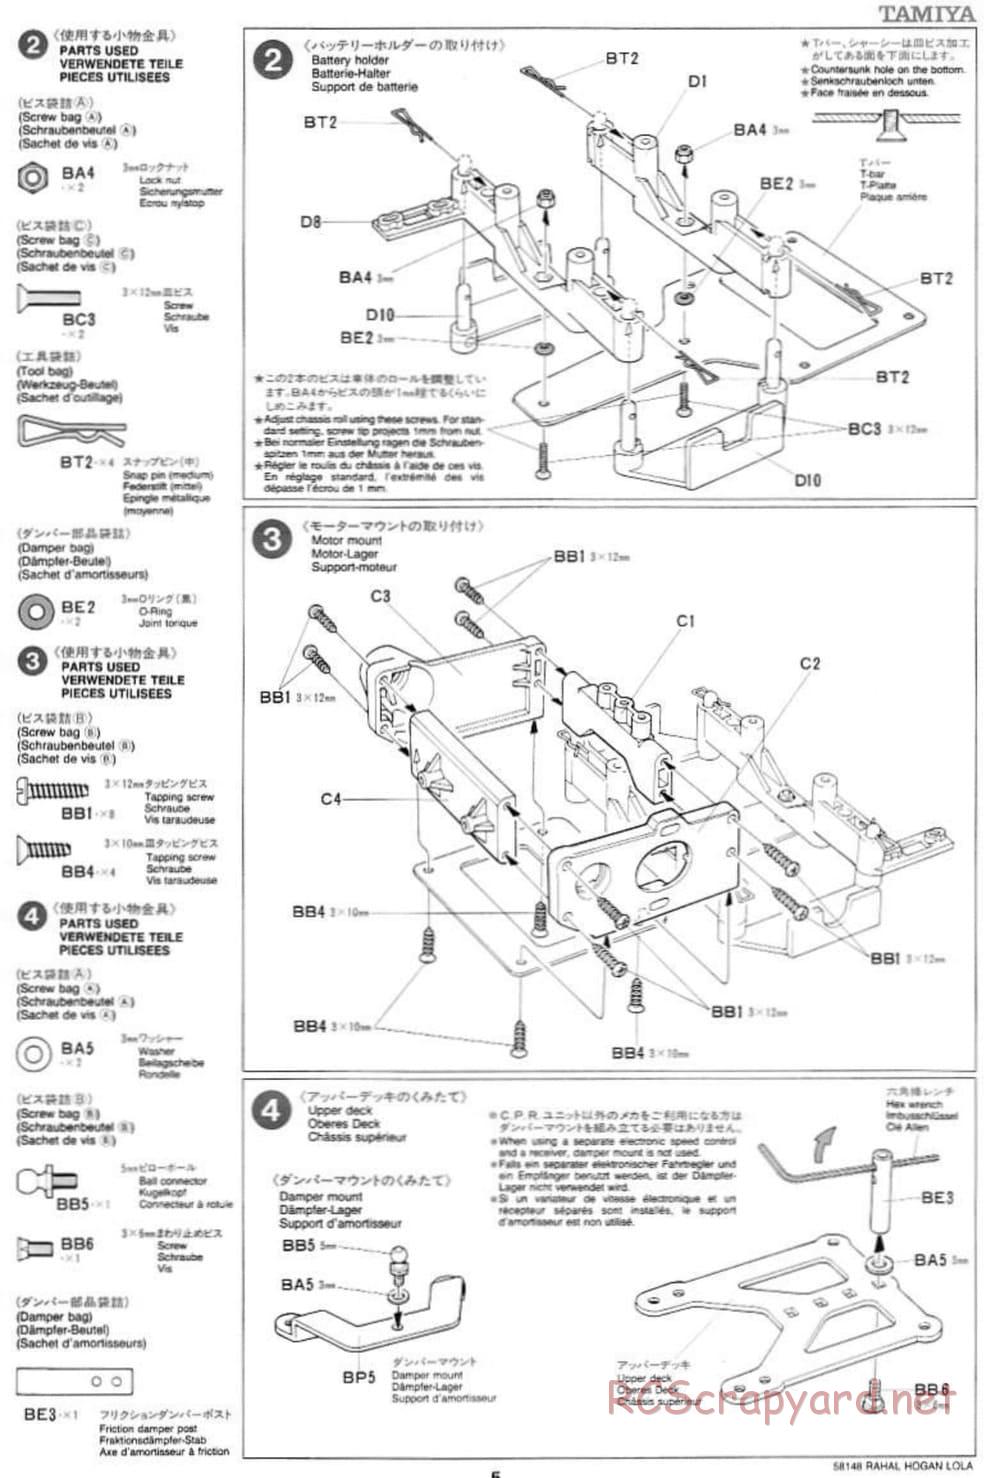 Tamiya - Rahal-Hogan Motorola Lola T94/00 Honda - F103L Chassis - Manual - Page 5